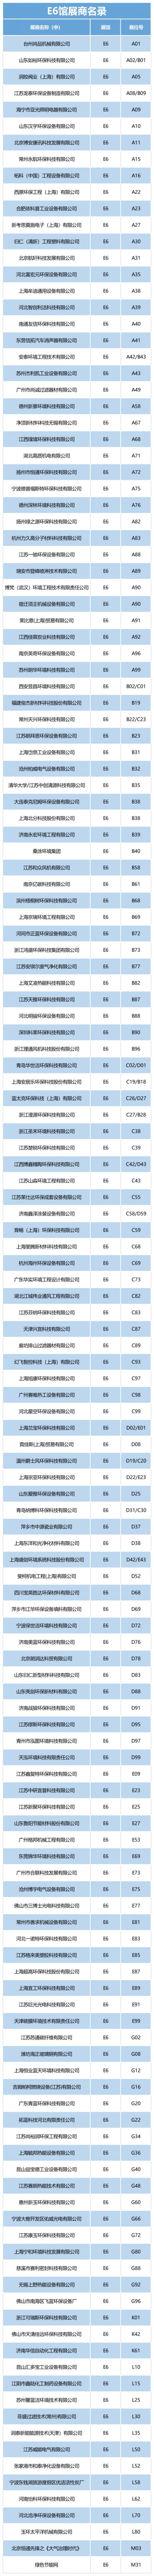 2020中国(上海)环博会展位图 展商名单